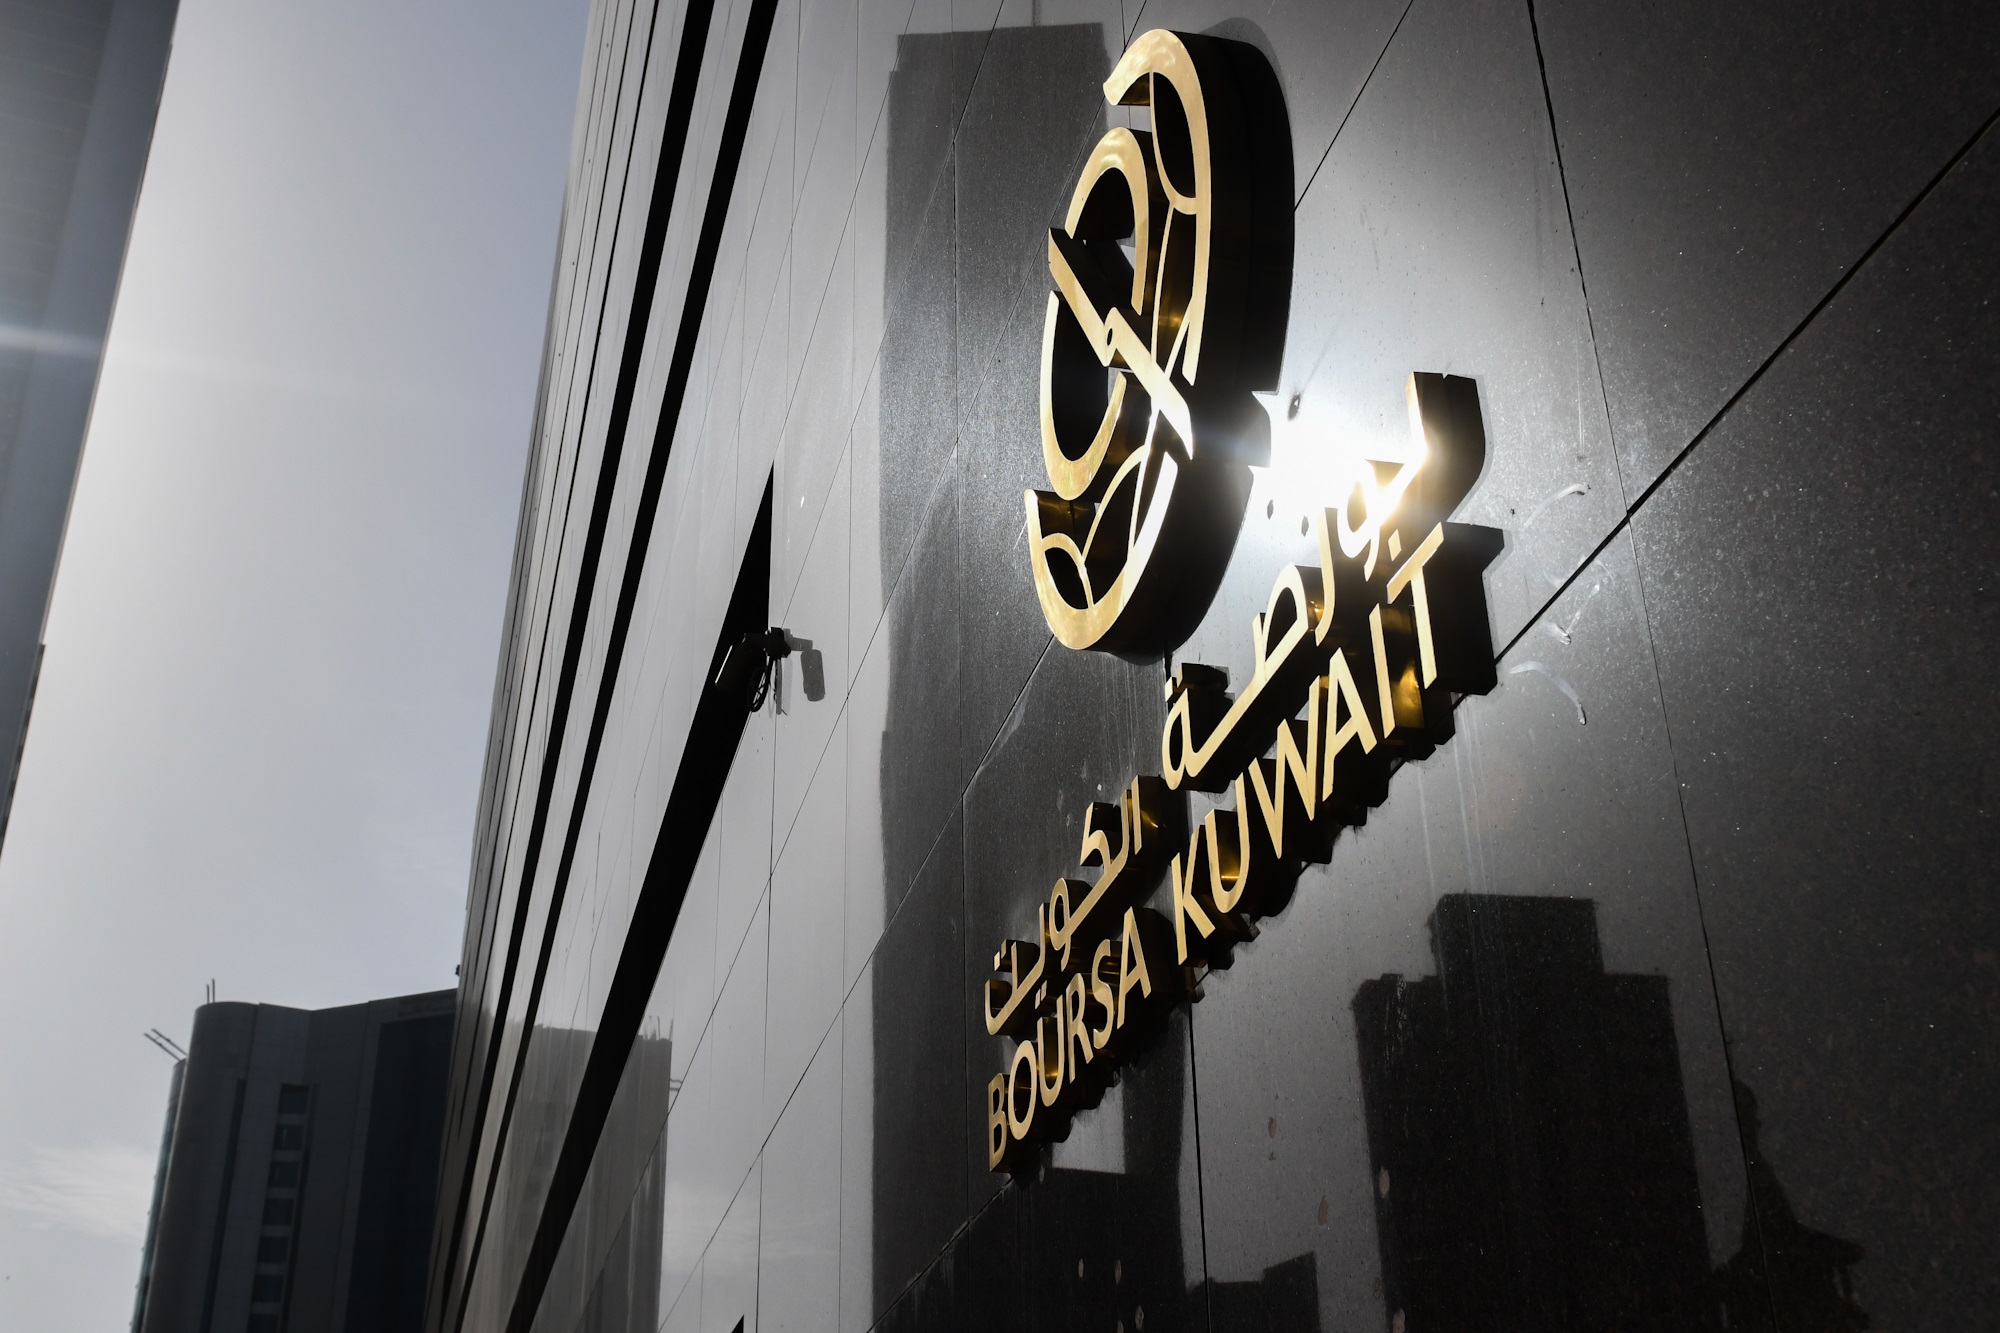 بورصة الكويت تغلق تعاملاتها على انخفاض مؤشرها العام 6ر20 نقطة ليبلغ 41ر7283 بنسبة 28ر0 في المئة                                                                                                                                                           